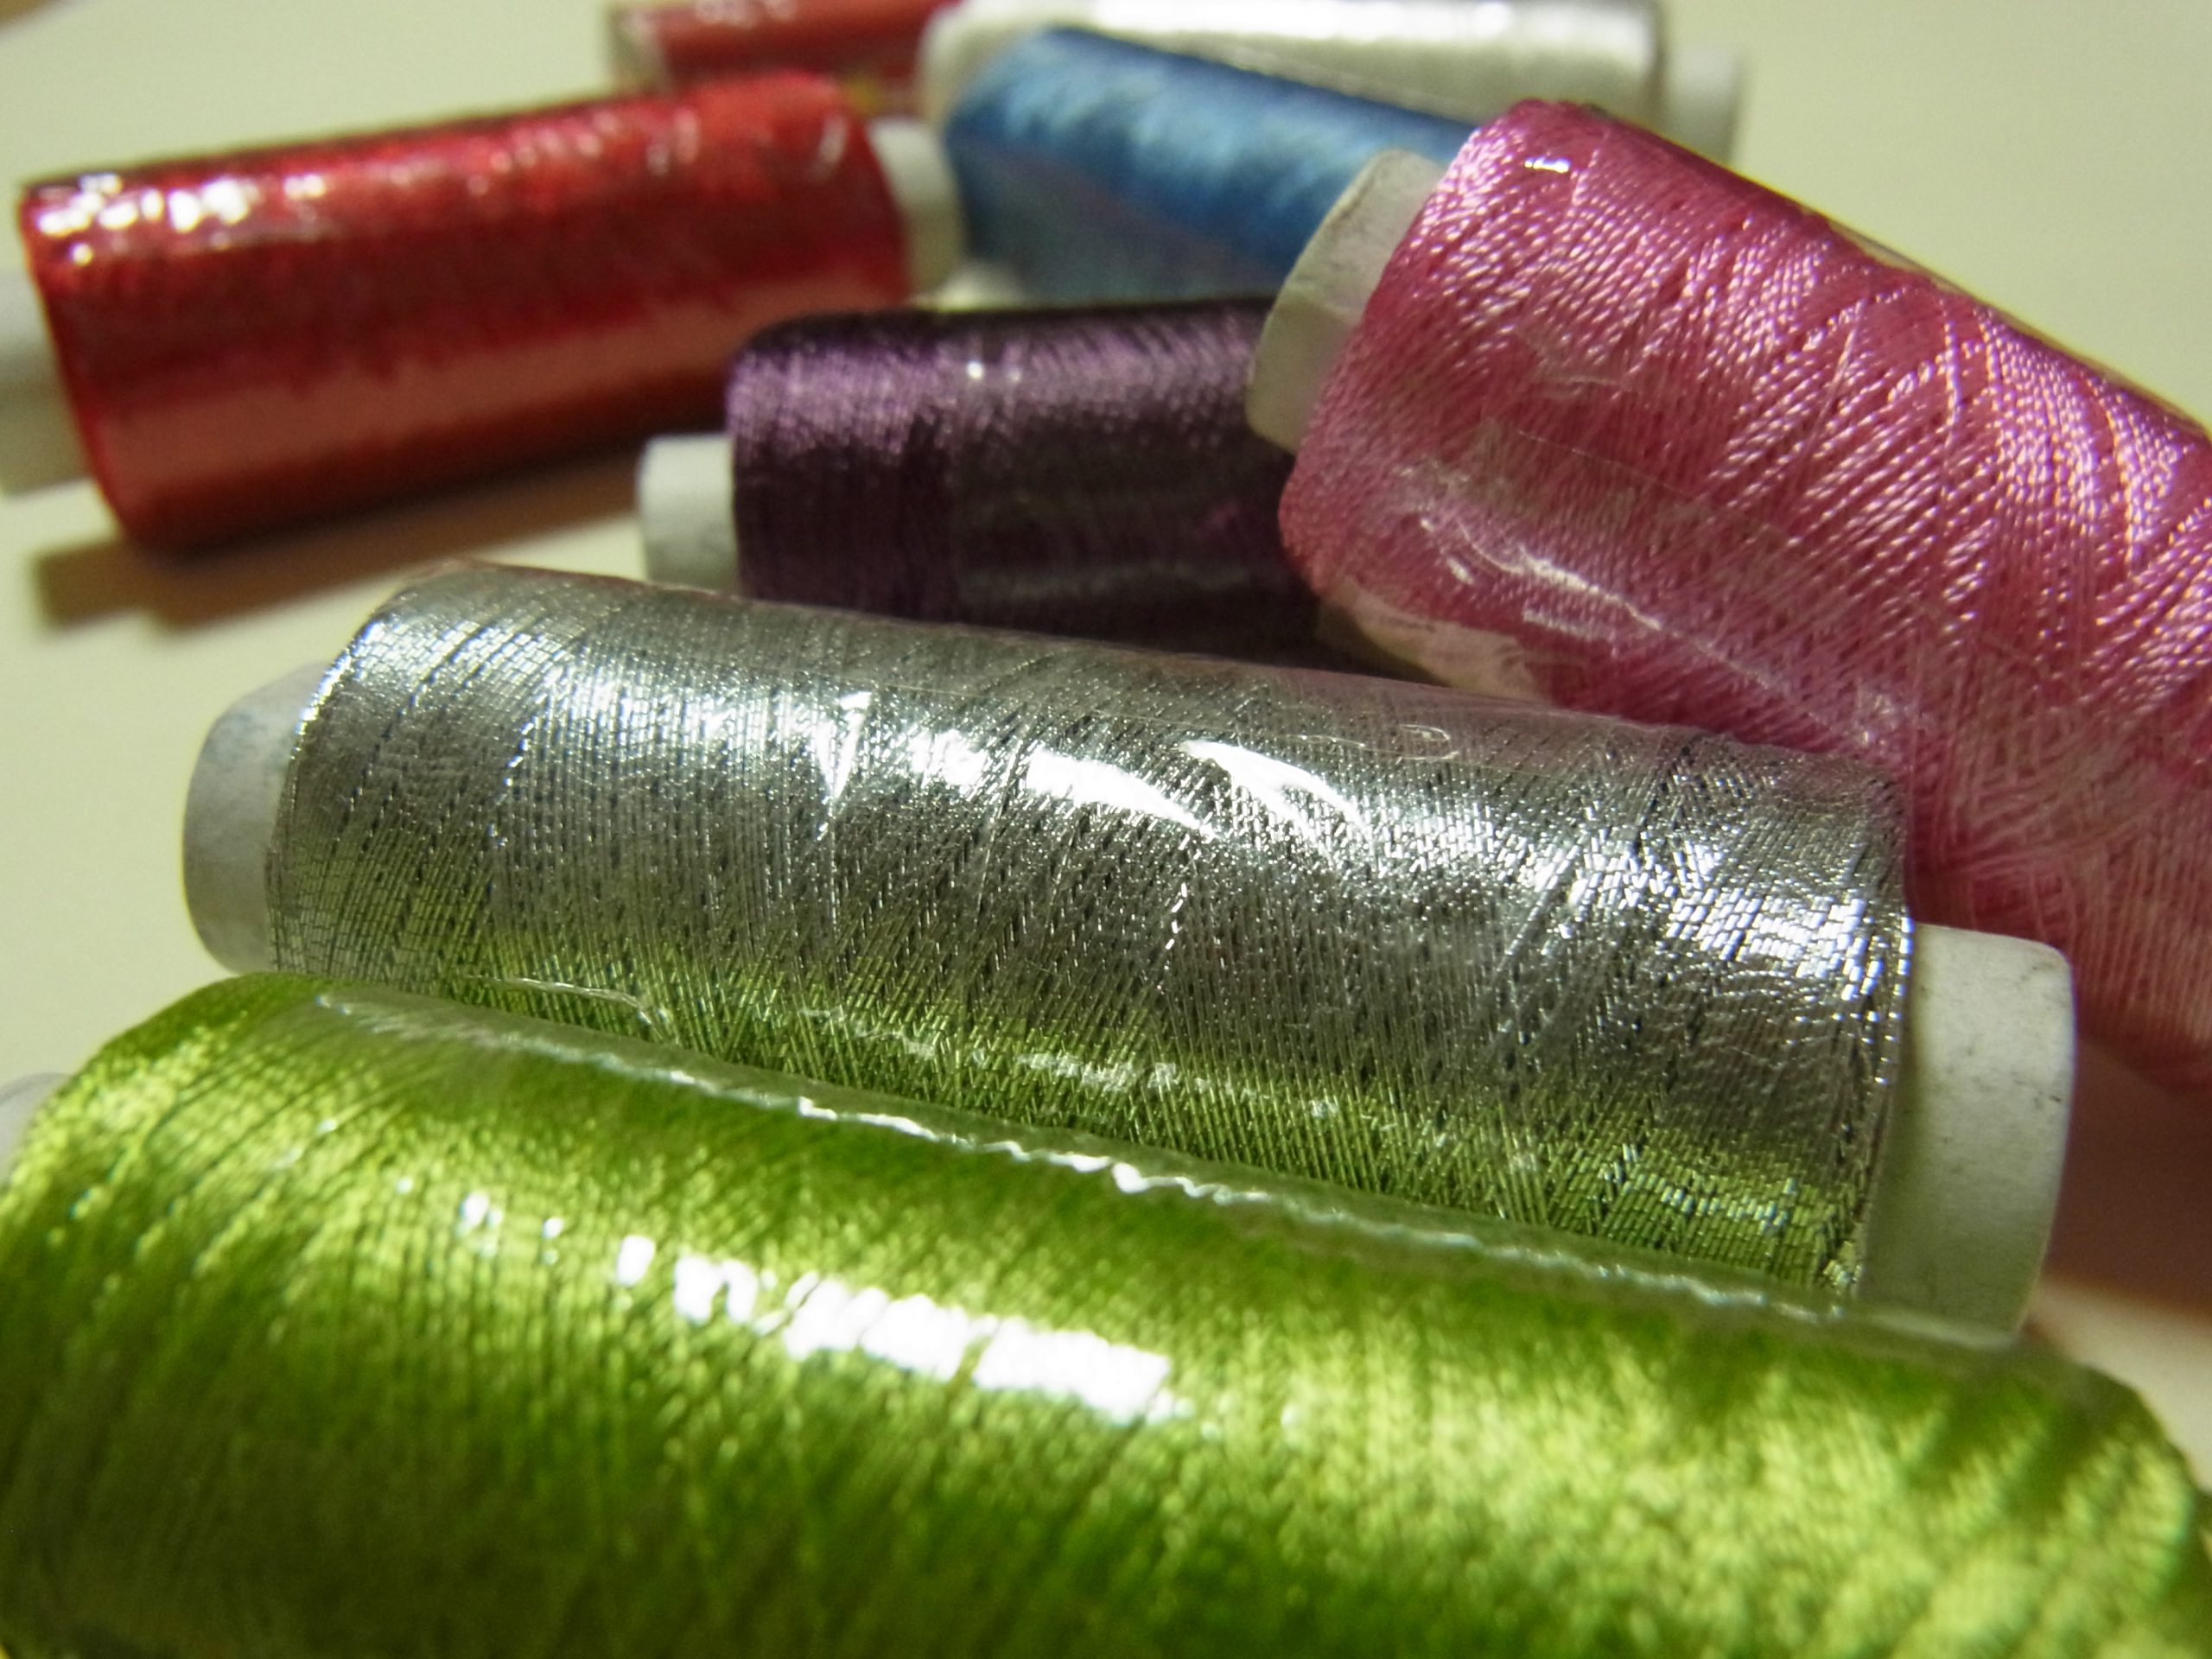 レーヨン糸が6色とメタル糸を購入しました。